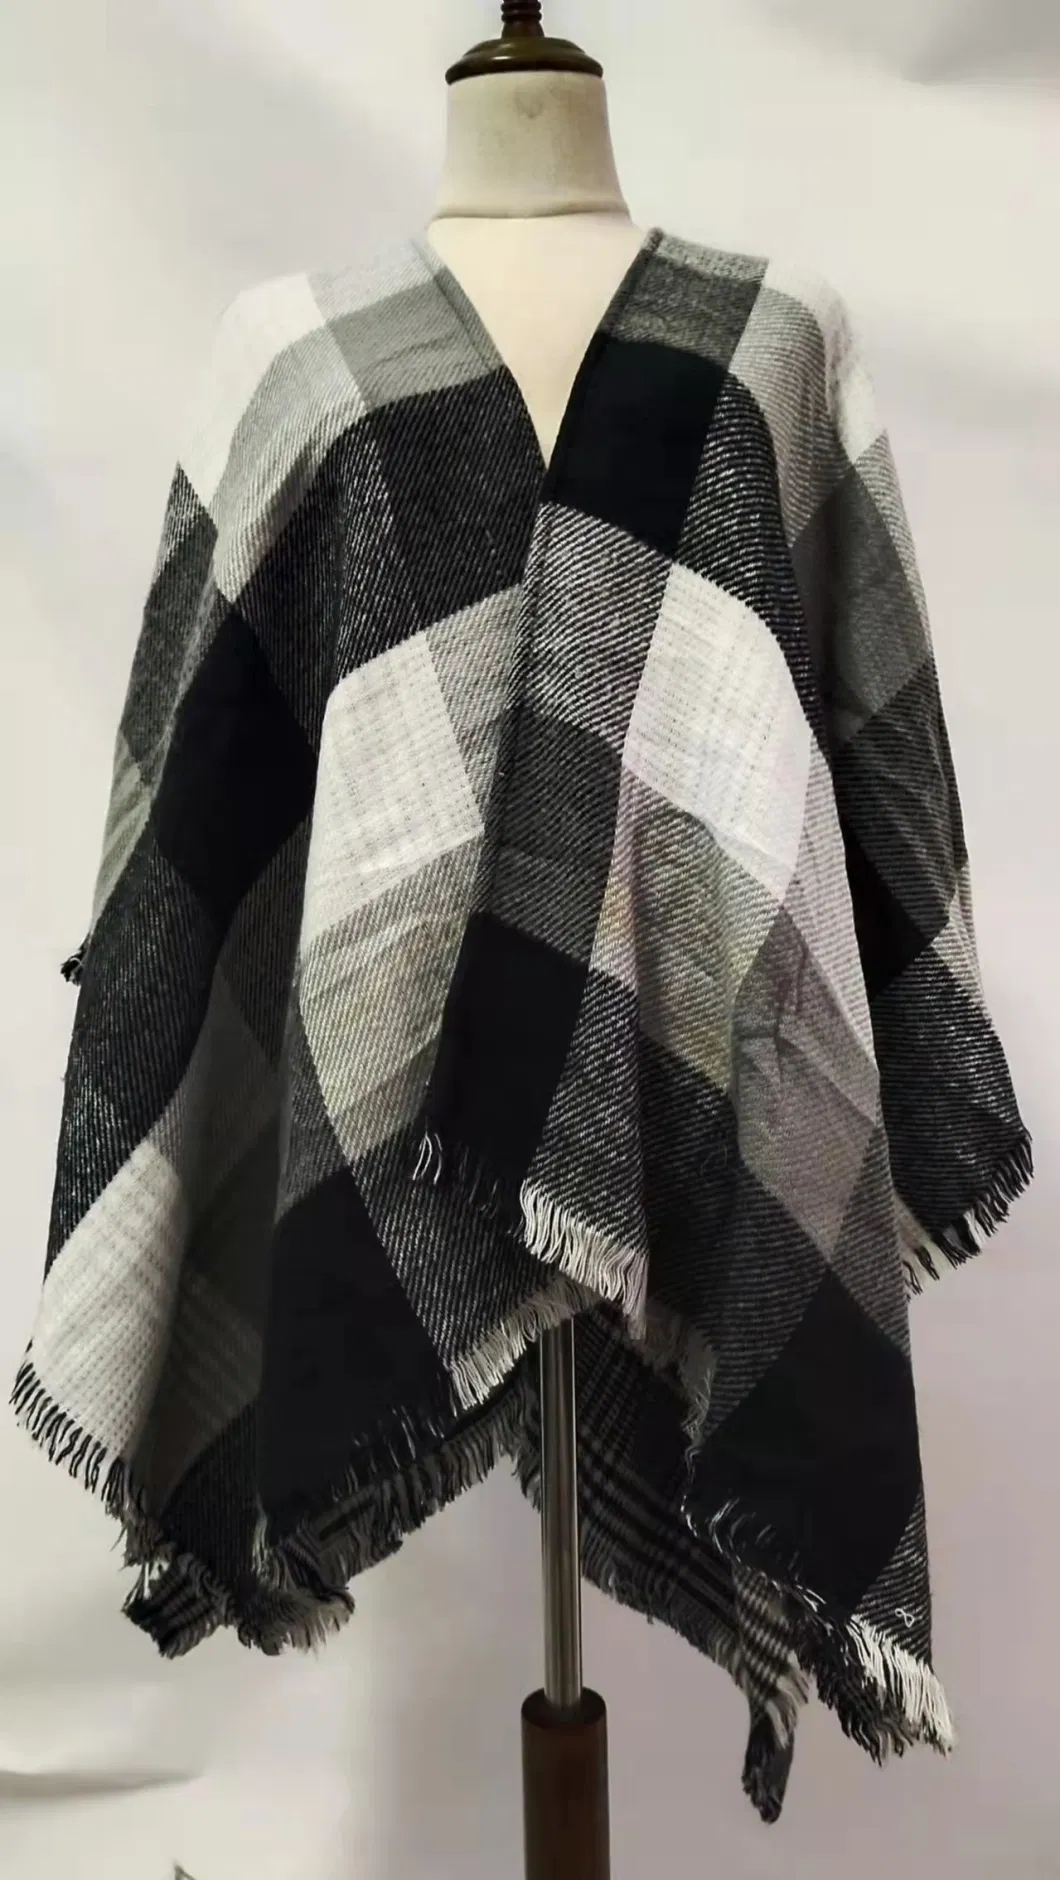 Lady Fashion Elegant Classical Tassel Shepherd Check Knitted Scarf Wrap Shawl